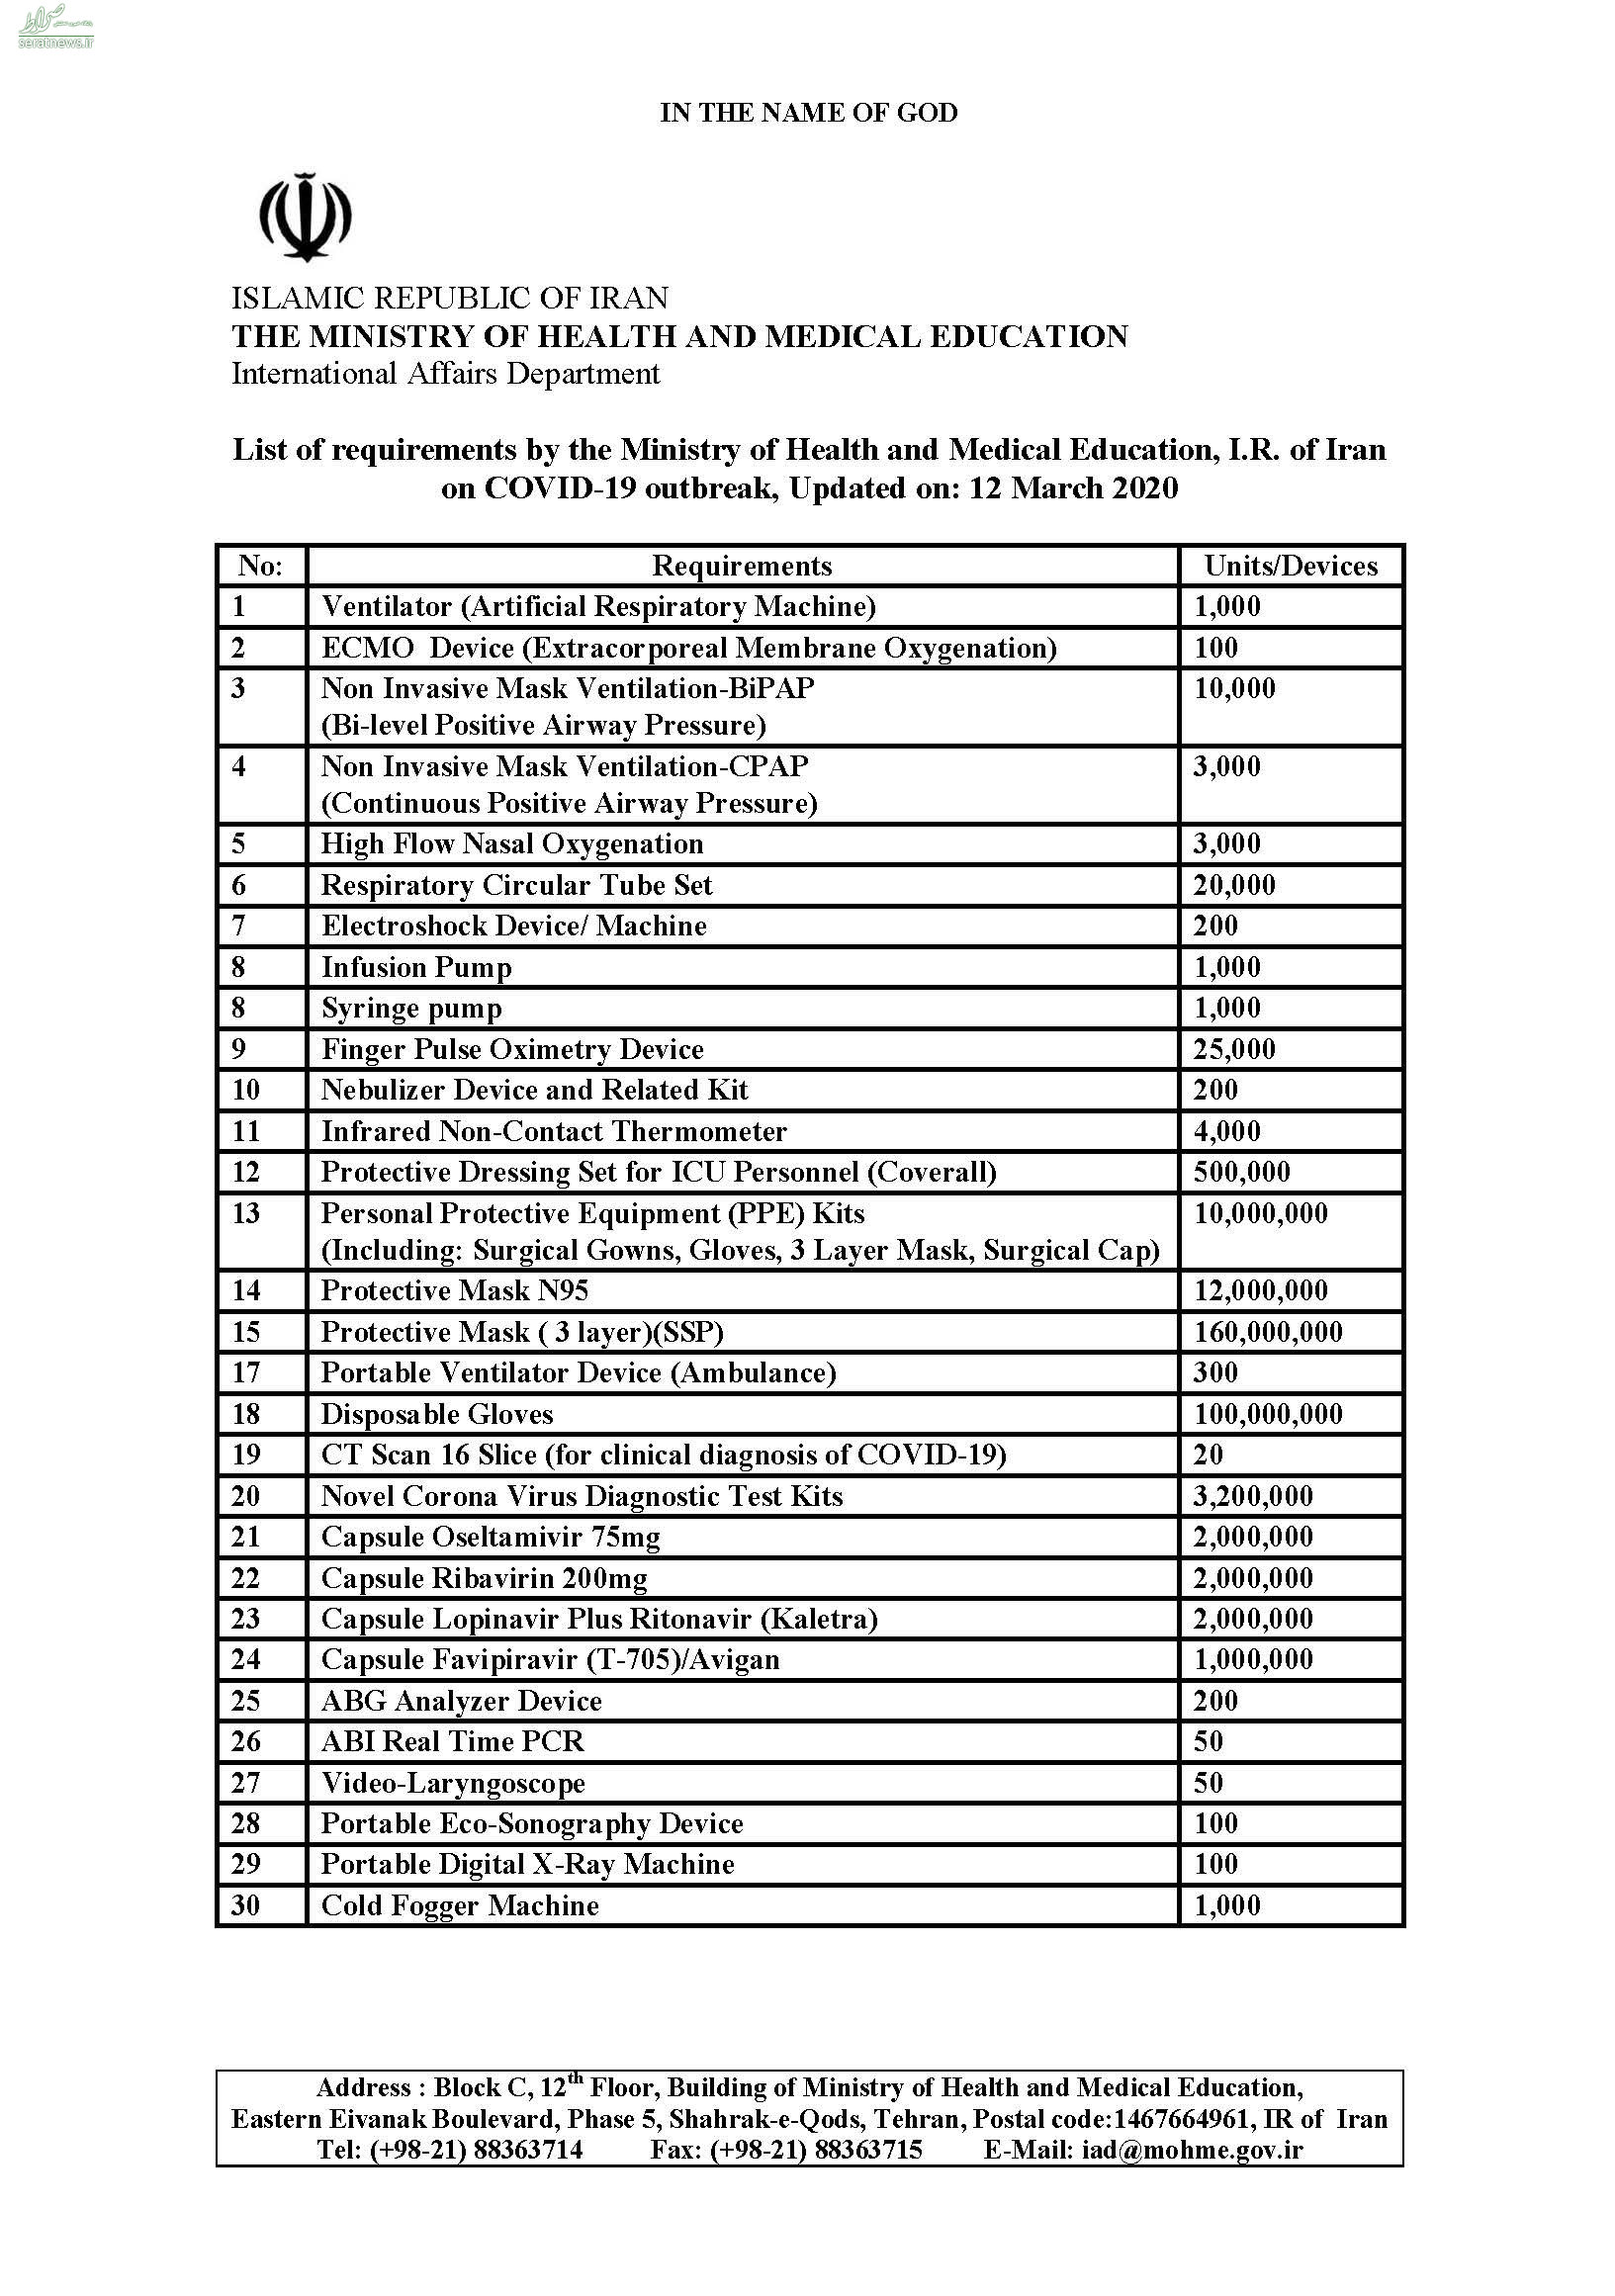 ظریف لیستی از تجهیزات پزشکی مورد نیاز ایران برای مقابله با کرونا منتشر کرد